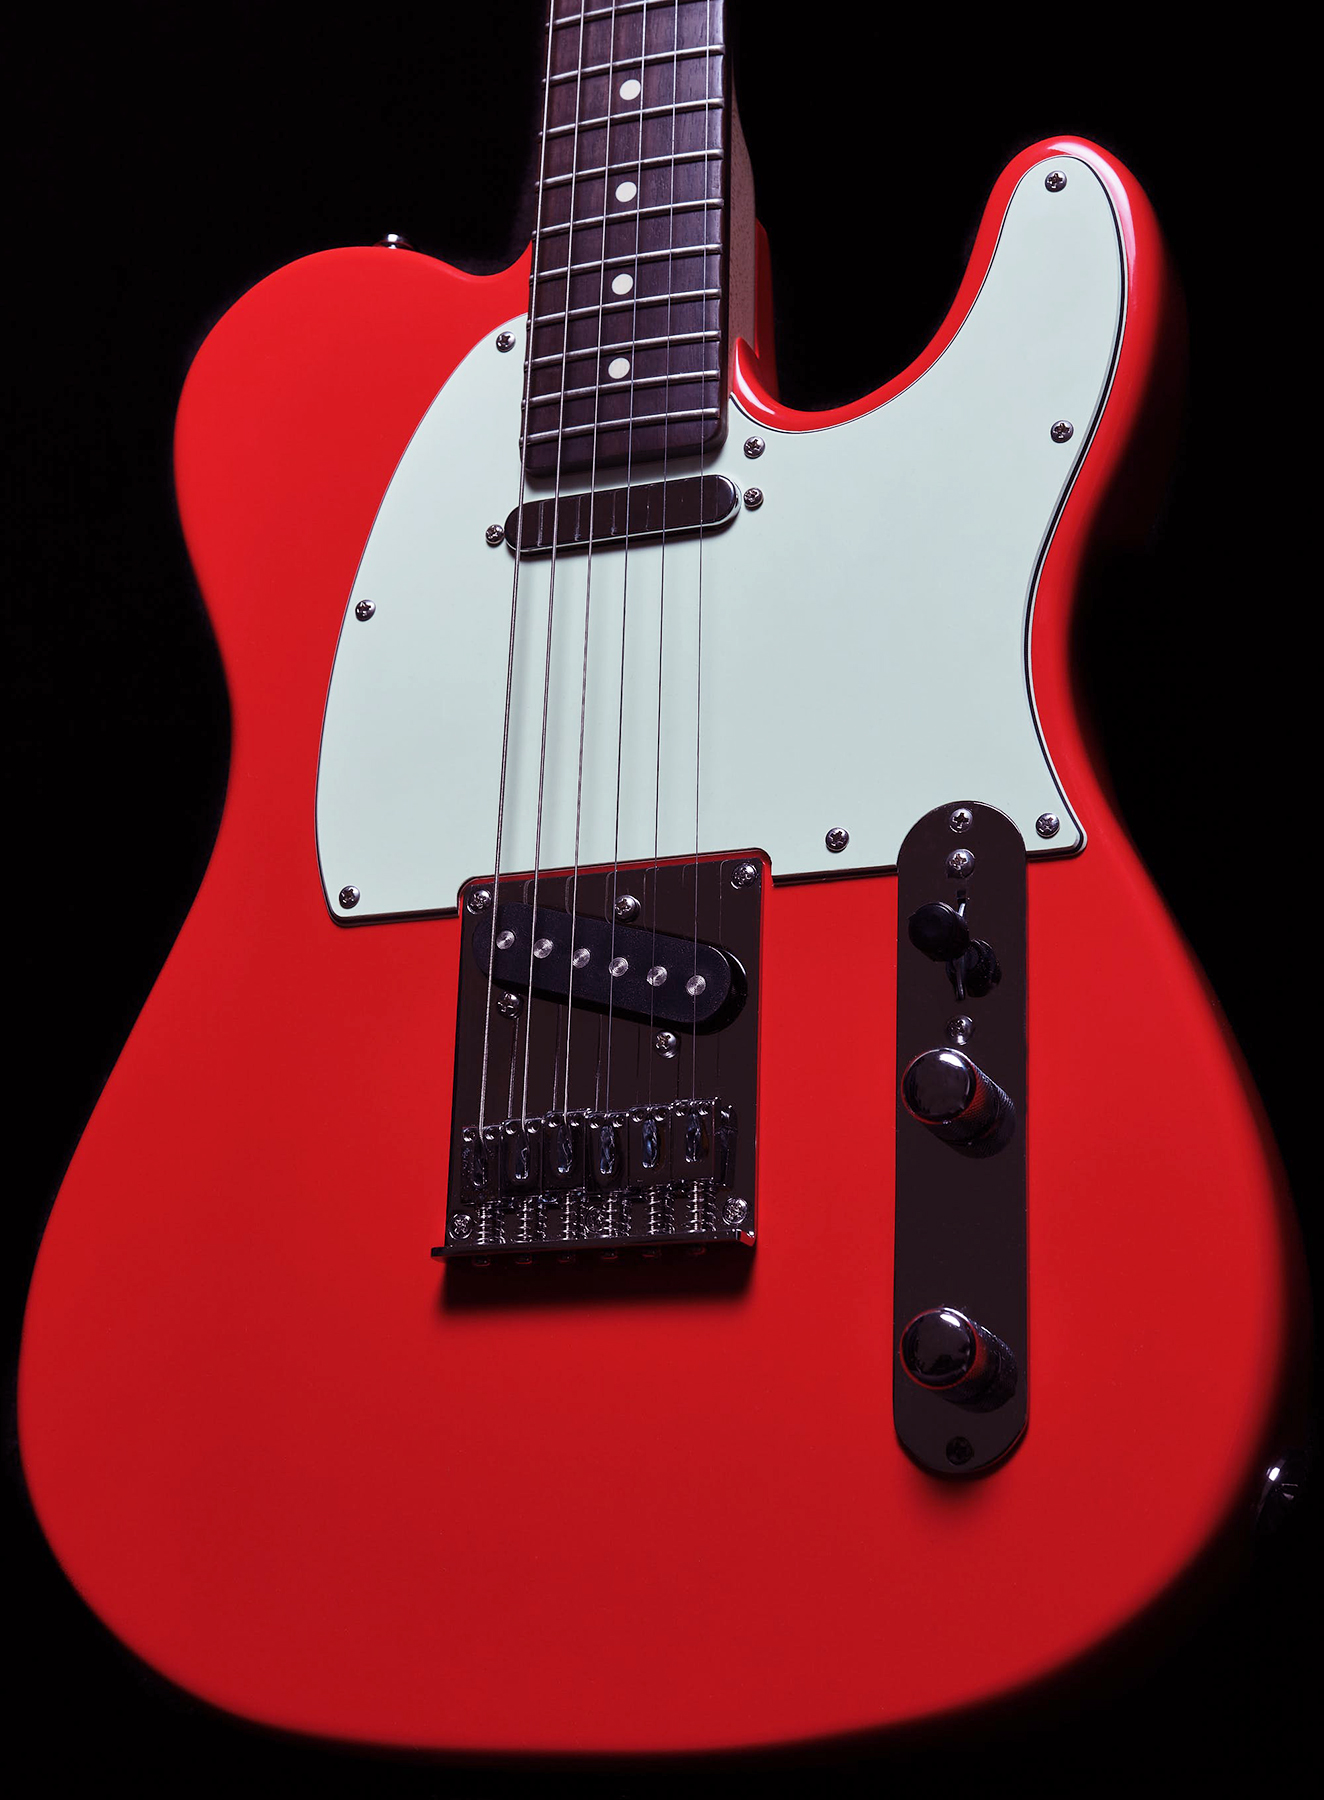 Sire Larry Carlton T3 Signature 2s Ht Rw - Dakota Red - Guitarra eléctrica con forma de tel - Variation 1